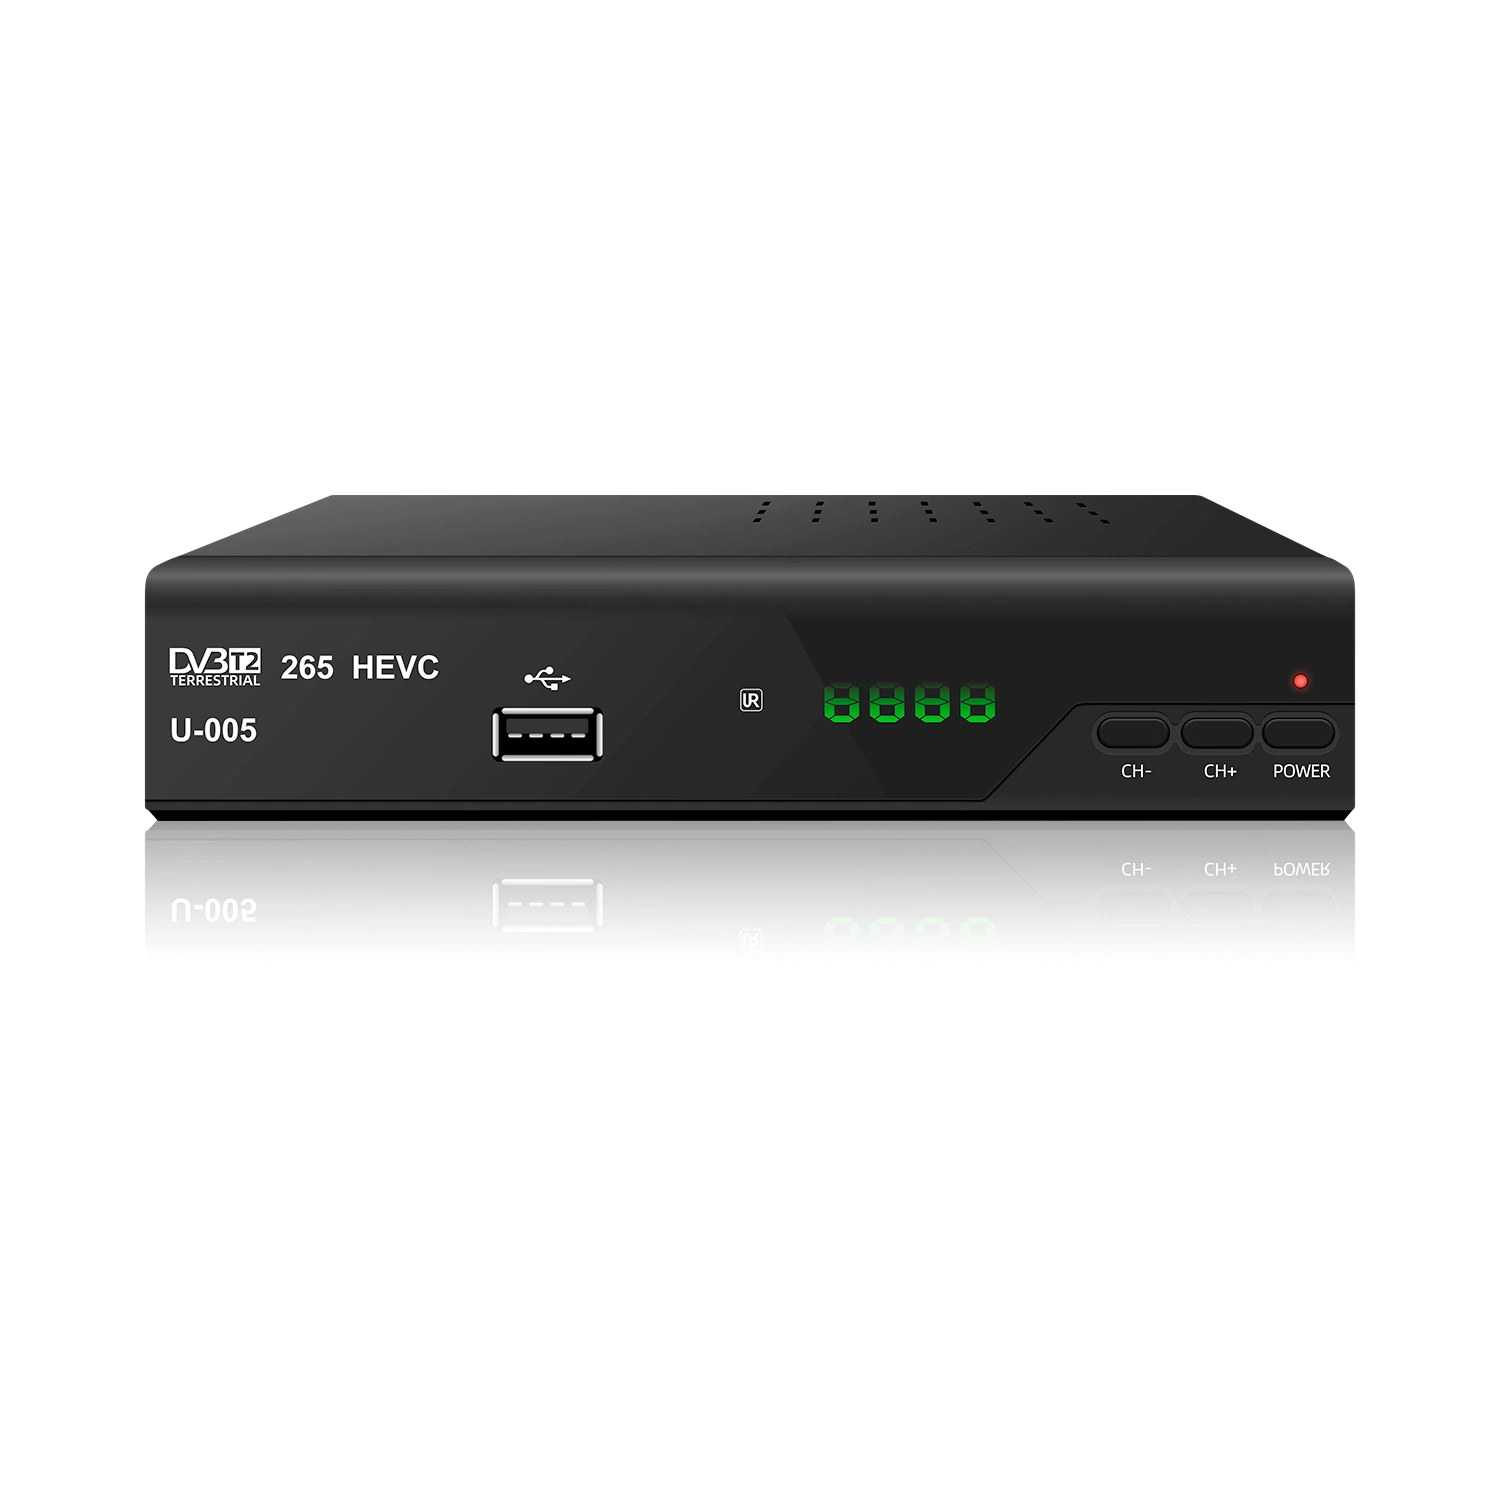 جودة عالية، H. 265 HEVC، جهاز استقبال تلفزيون رقمي DVB-T2